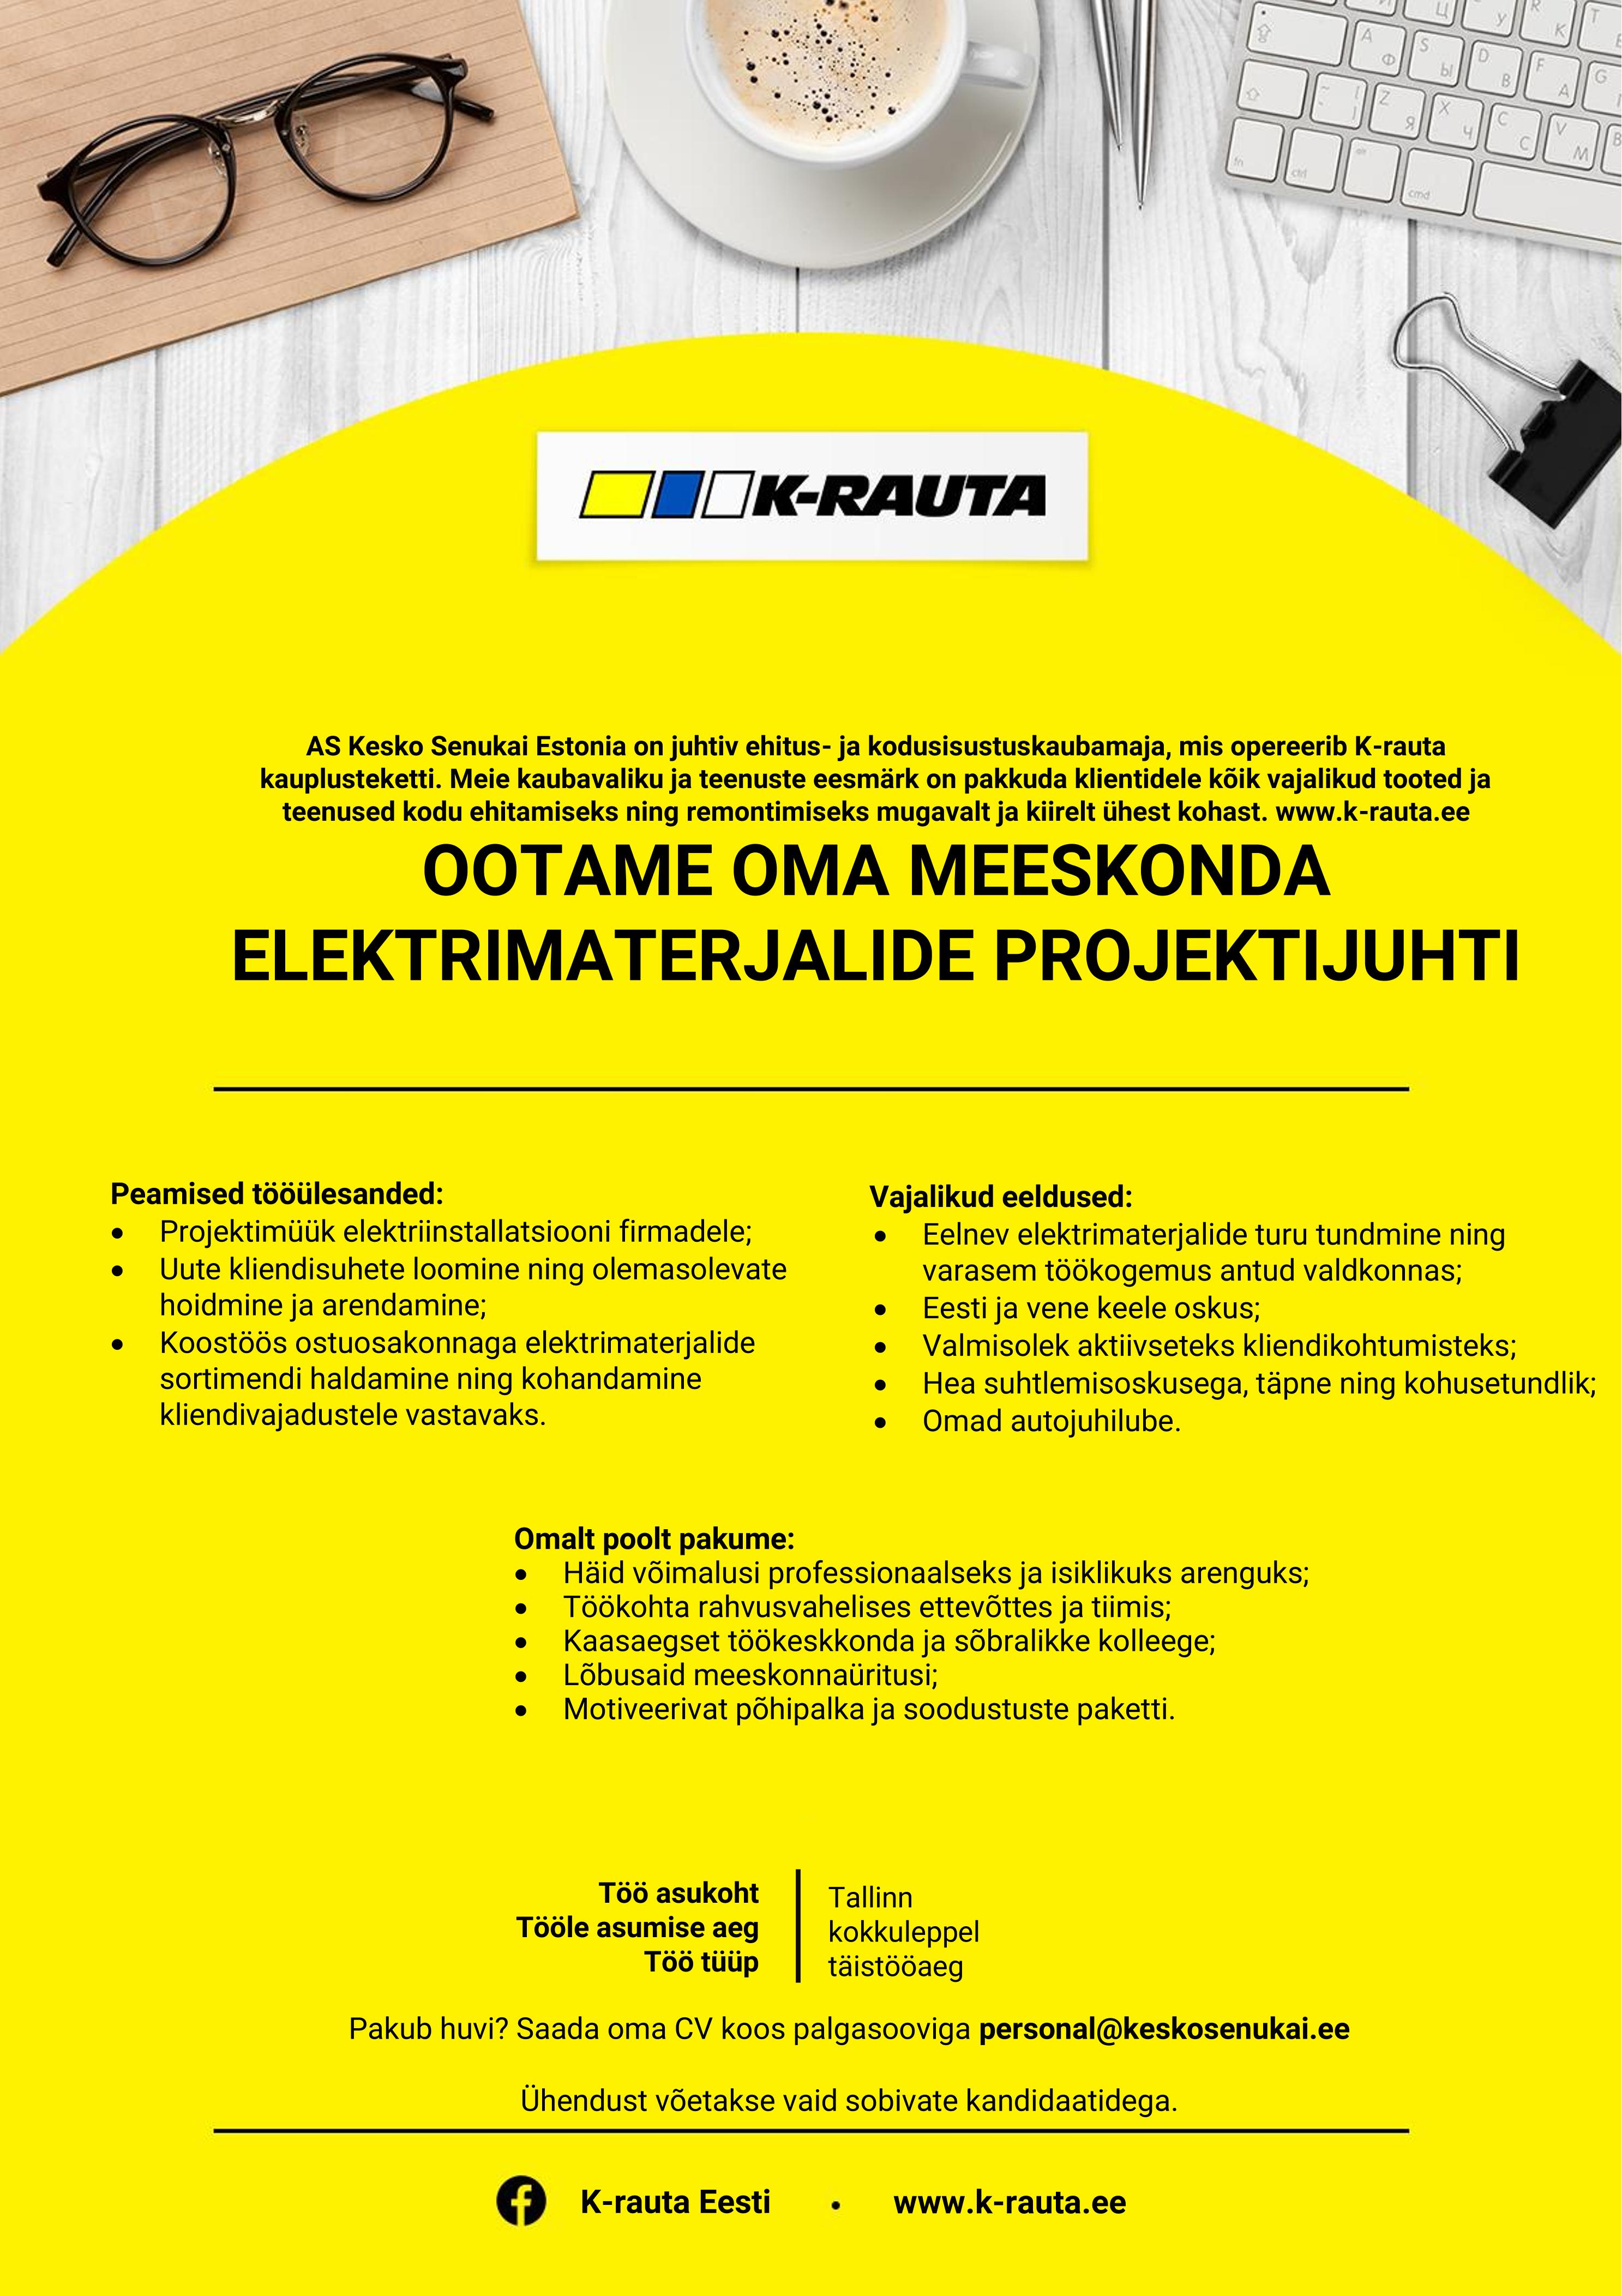 Kesko Senukai Estonia AS Elektrimaterjalide projektijuht